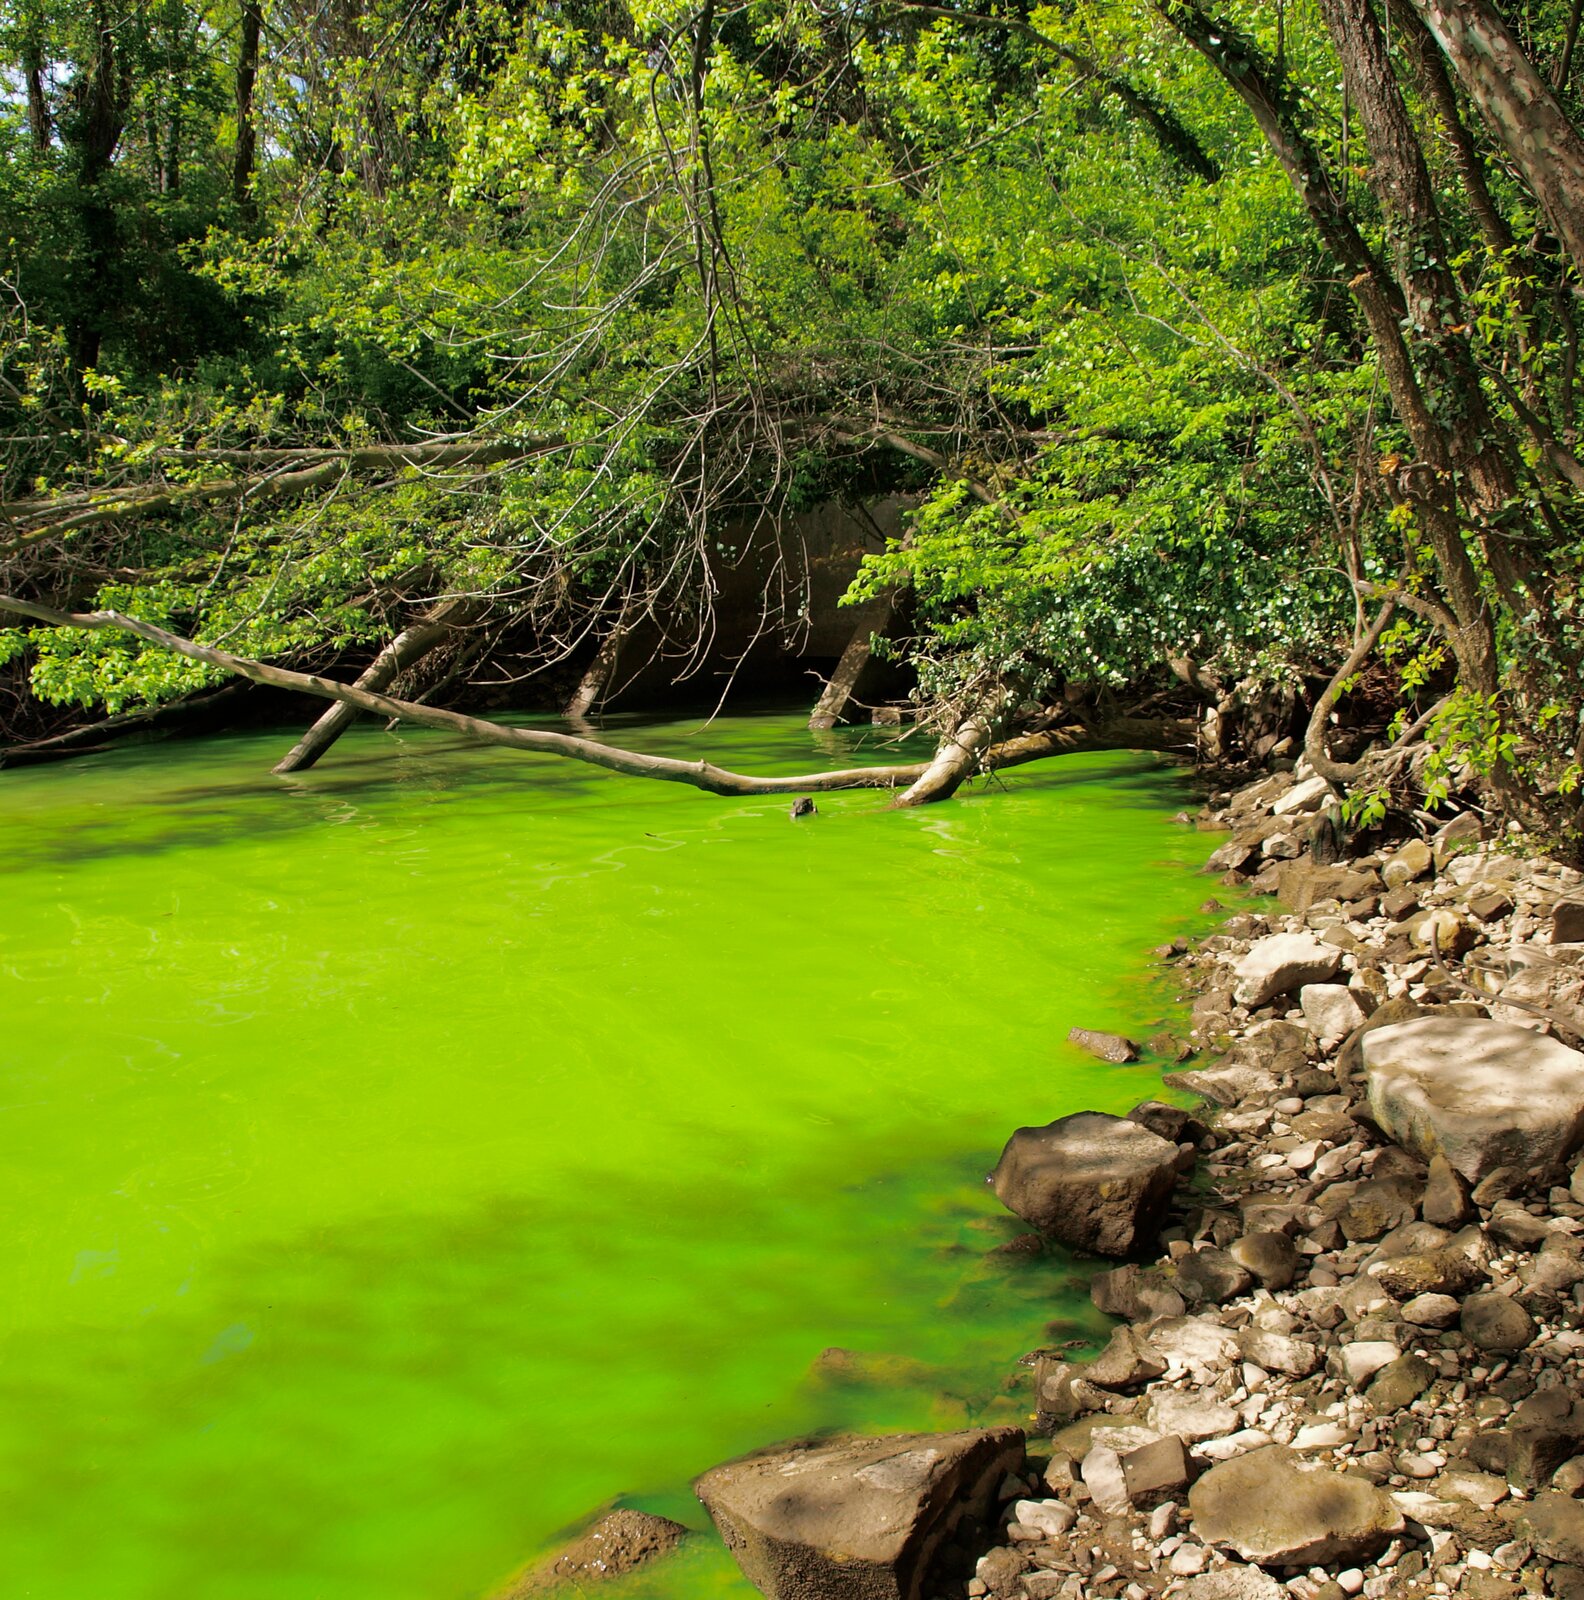 Zdjęcie przedstawia rzekę płynącą przez las. Gałęzie drzew zniżają się do powierzchni wody. Cała powierzchnia rzeki pokryta grubą warstwą zielonego kożucha.